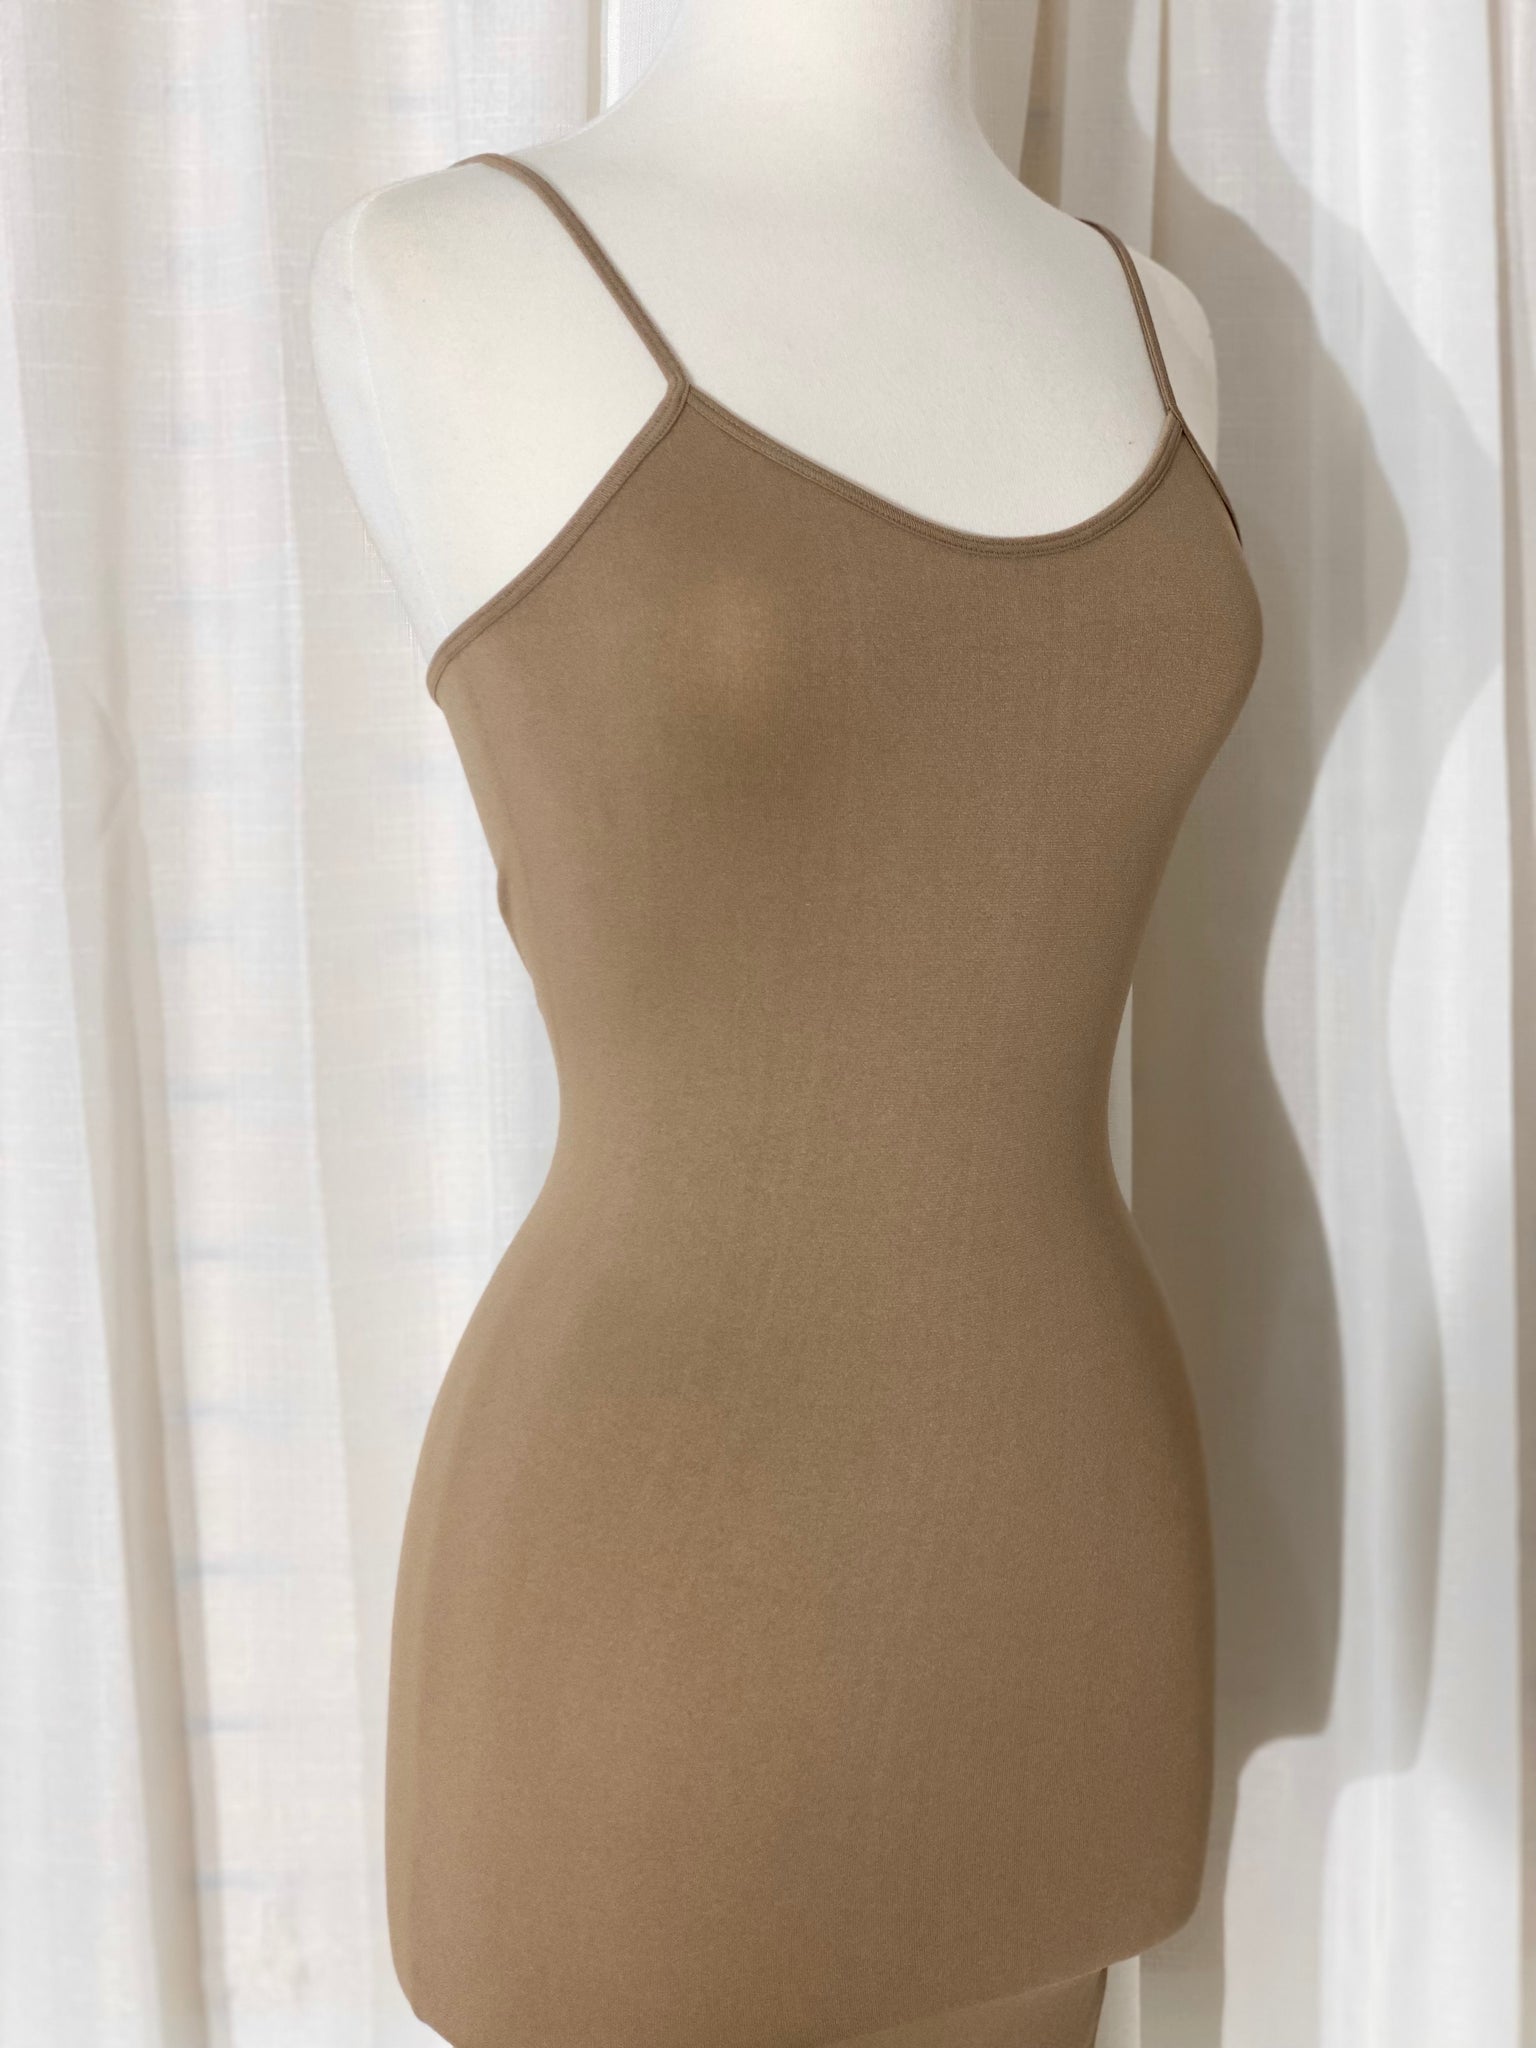 The “Kims” Mocha Nude Spandex Dress